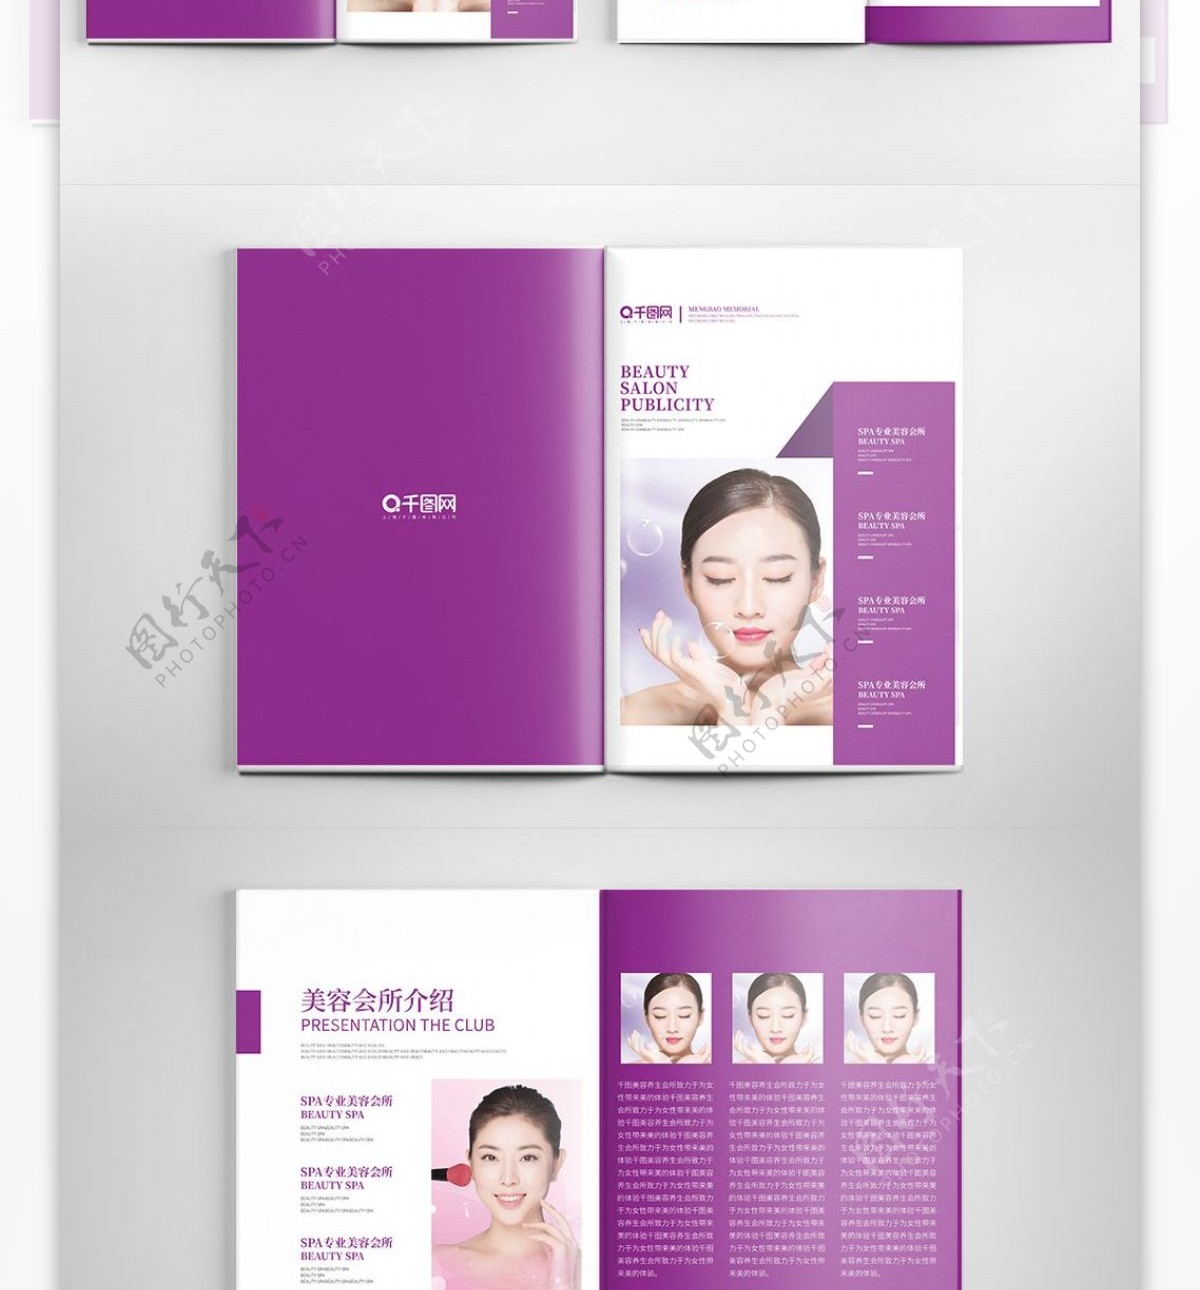 紫色简约高档美容会所宣传画册整套